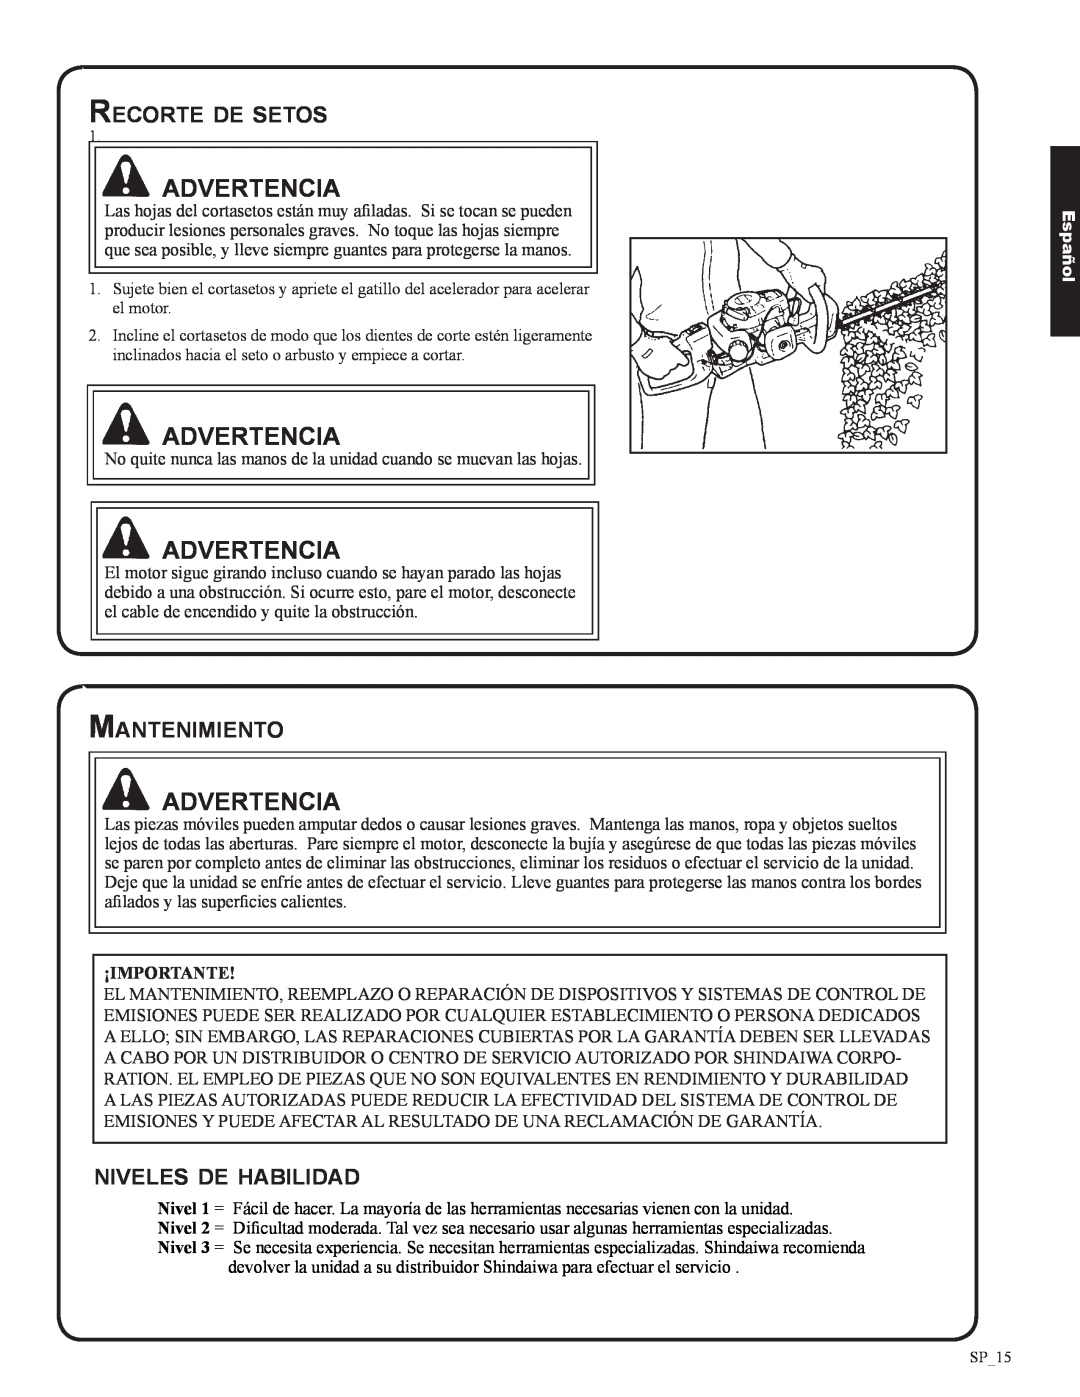 Shindaiwa 82053, DH212 manual Recorte de setos, Mantenimiento, niveles de habilidad, Advertencia, Español 